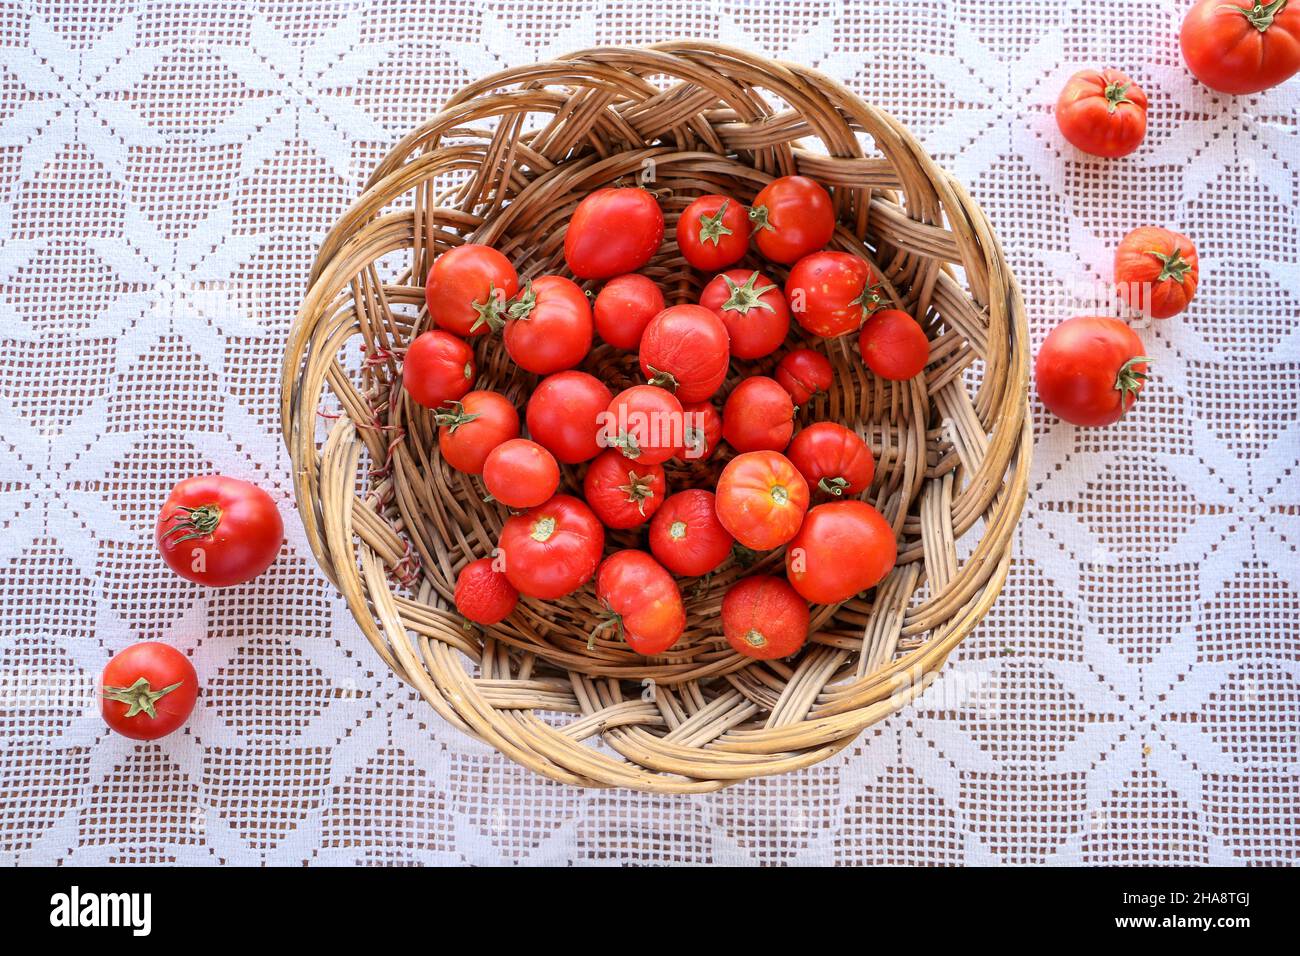 Frisch gepflückte Tomaten erscheinen in einem Korb aus Korb aus Korb. Der  Korb und andere Tomaten stehen auf einem weißen Schnürdeckel. Das Foto ist  Nahaufnahme und t Stockfotografie - Alamy